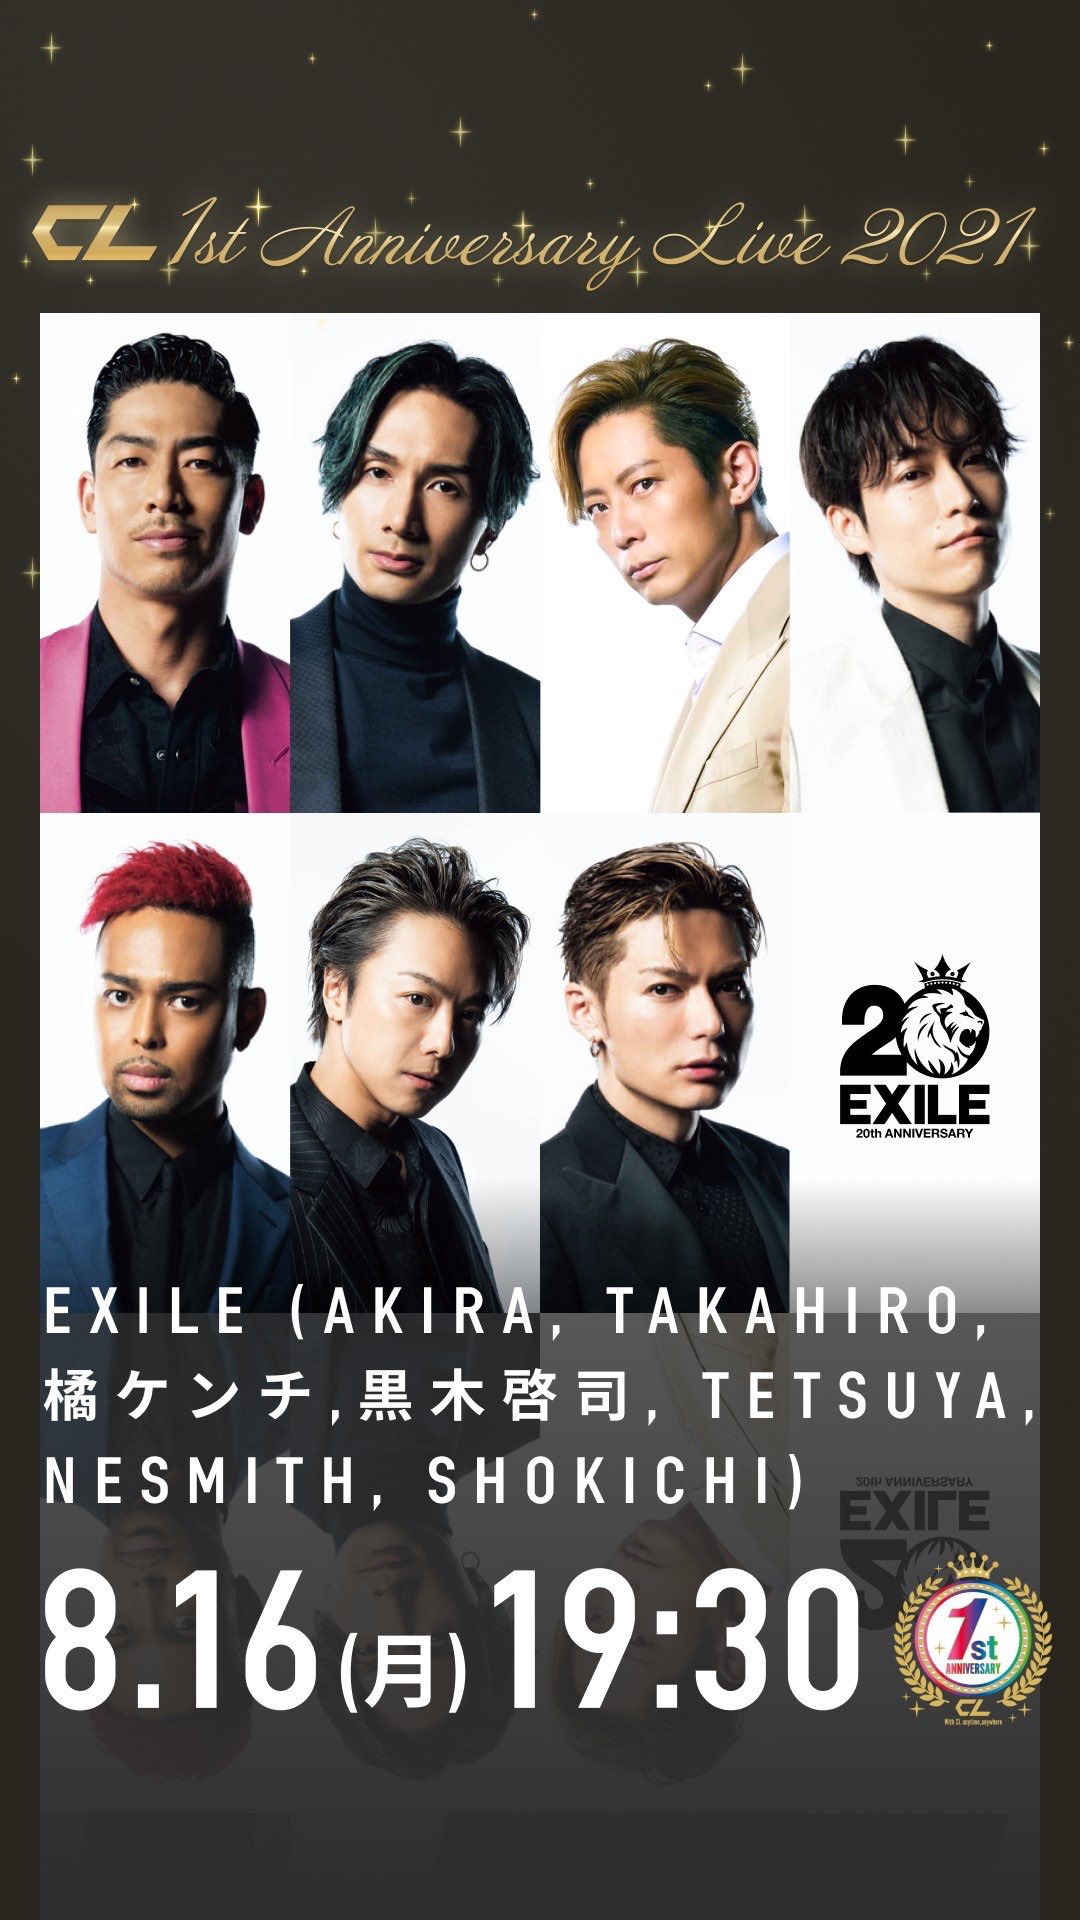 Exile Takahiro Staff 公式 Cl 1st Anniversary Live 8 16 月 19 30 配信チケット 3000円 Tax In チケットご購入かつclプレミアムplus会員様には抽選でサイン入りアクリルパネルのプレゼントがございます チケットご購入者様は 9 15 水 23 59まで